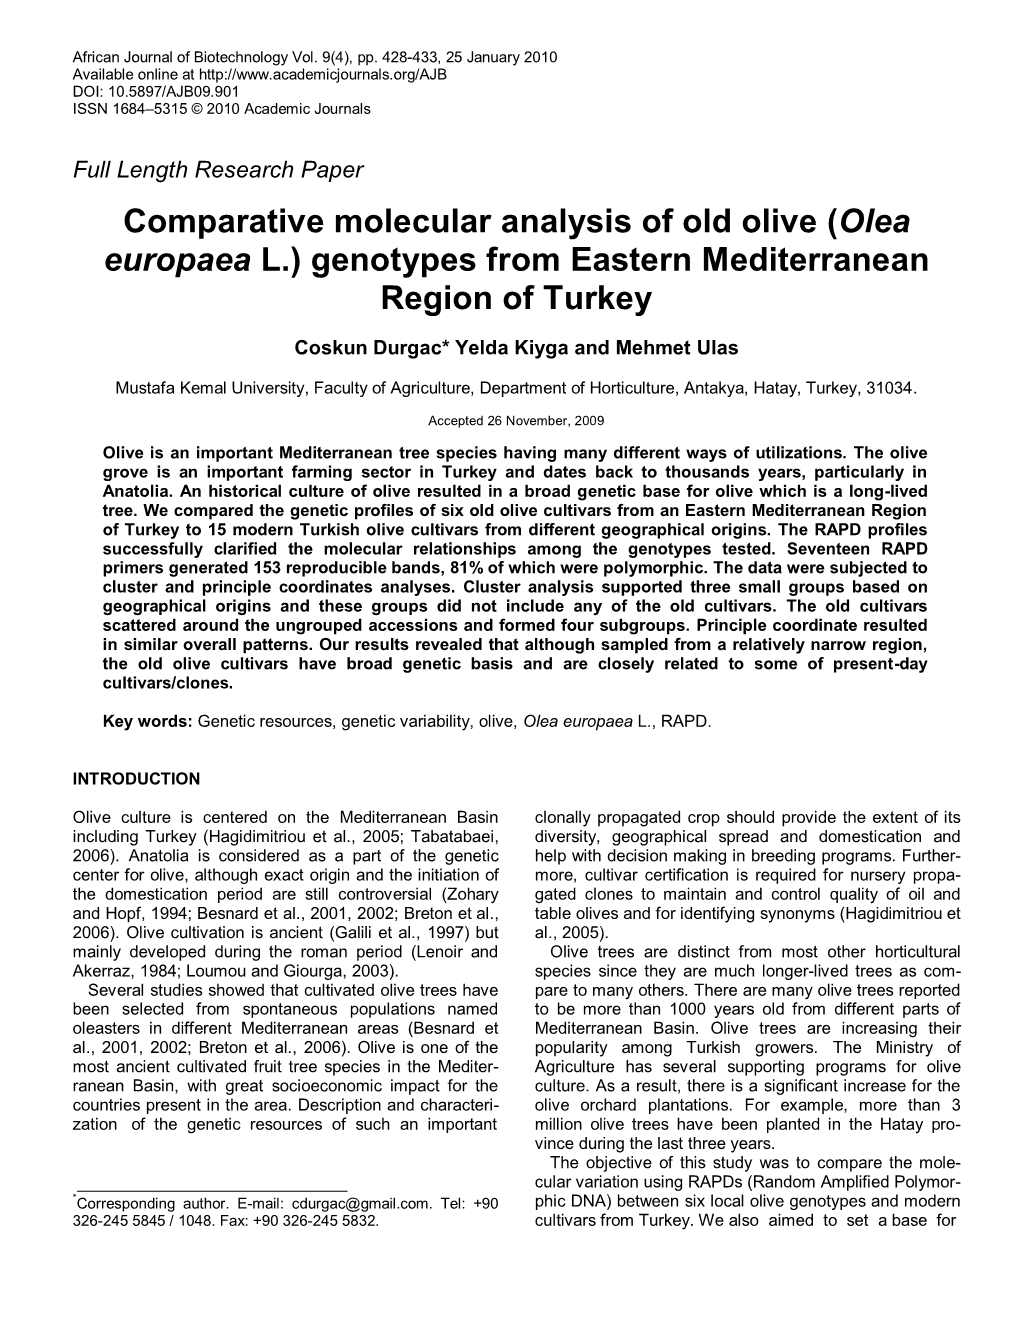 Olea Europaea L.) Genotypes from Eastern Mediterranean Region of Turkey